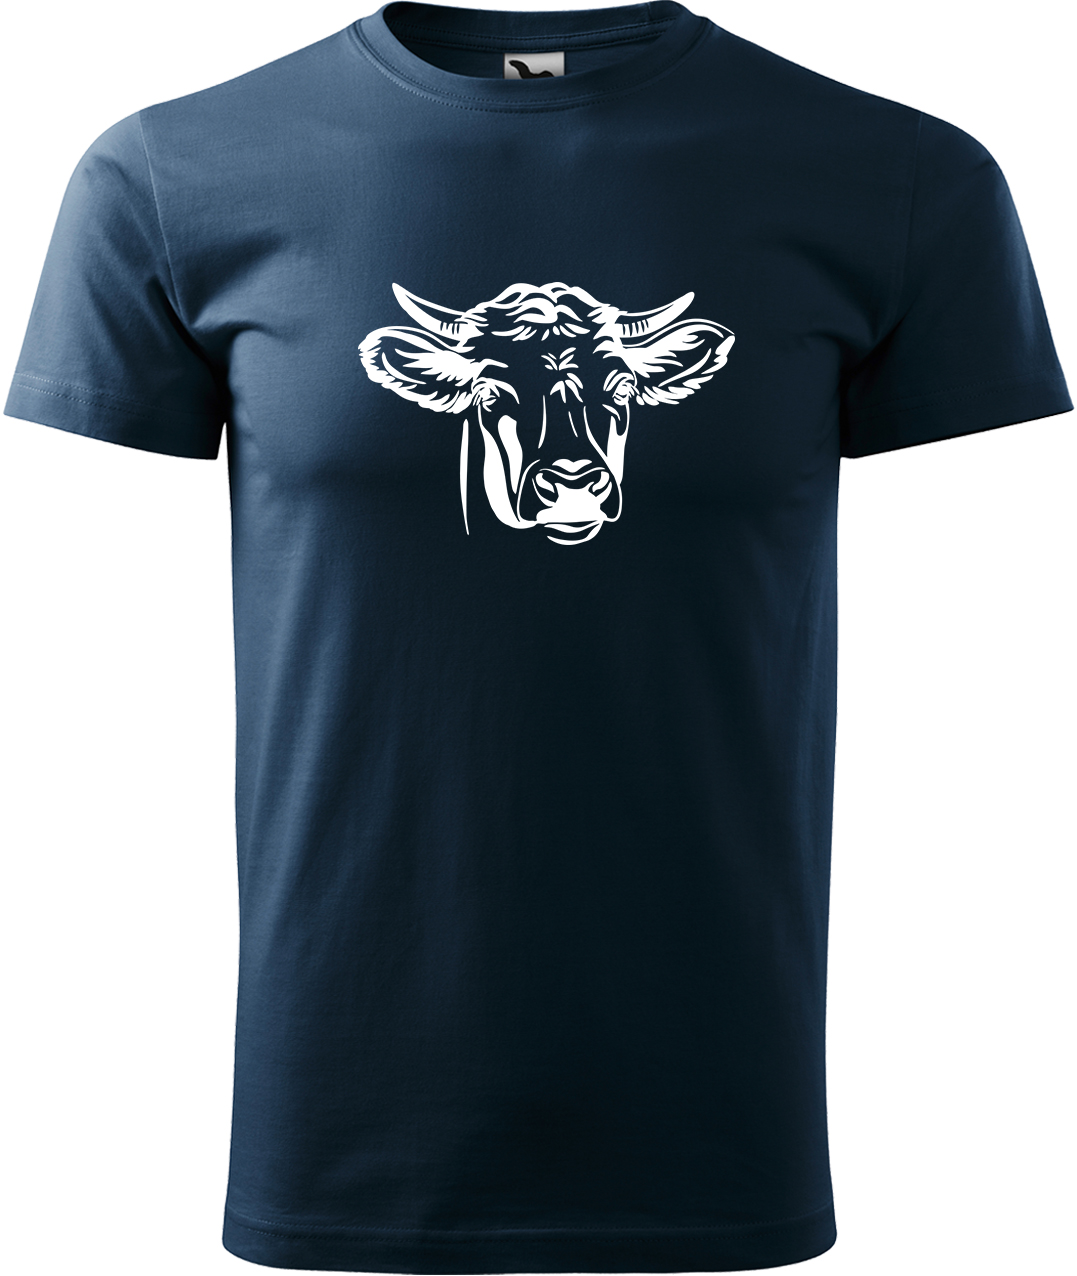 Pánské tričko s krávou - Hlava krávy Velikost: L, Barva: Námořní modrá (02), Střih: pánský